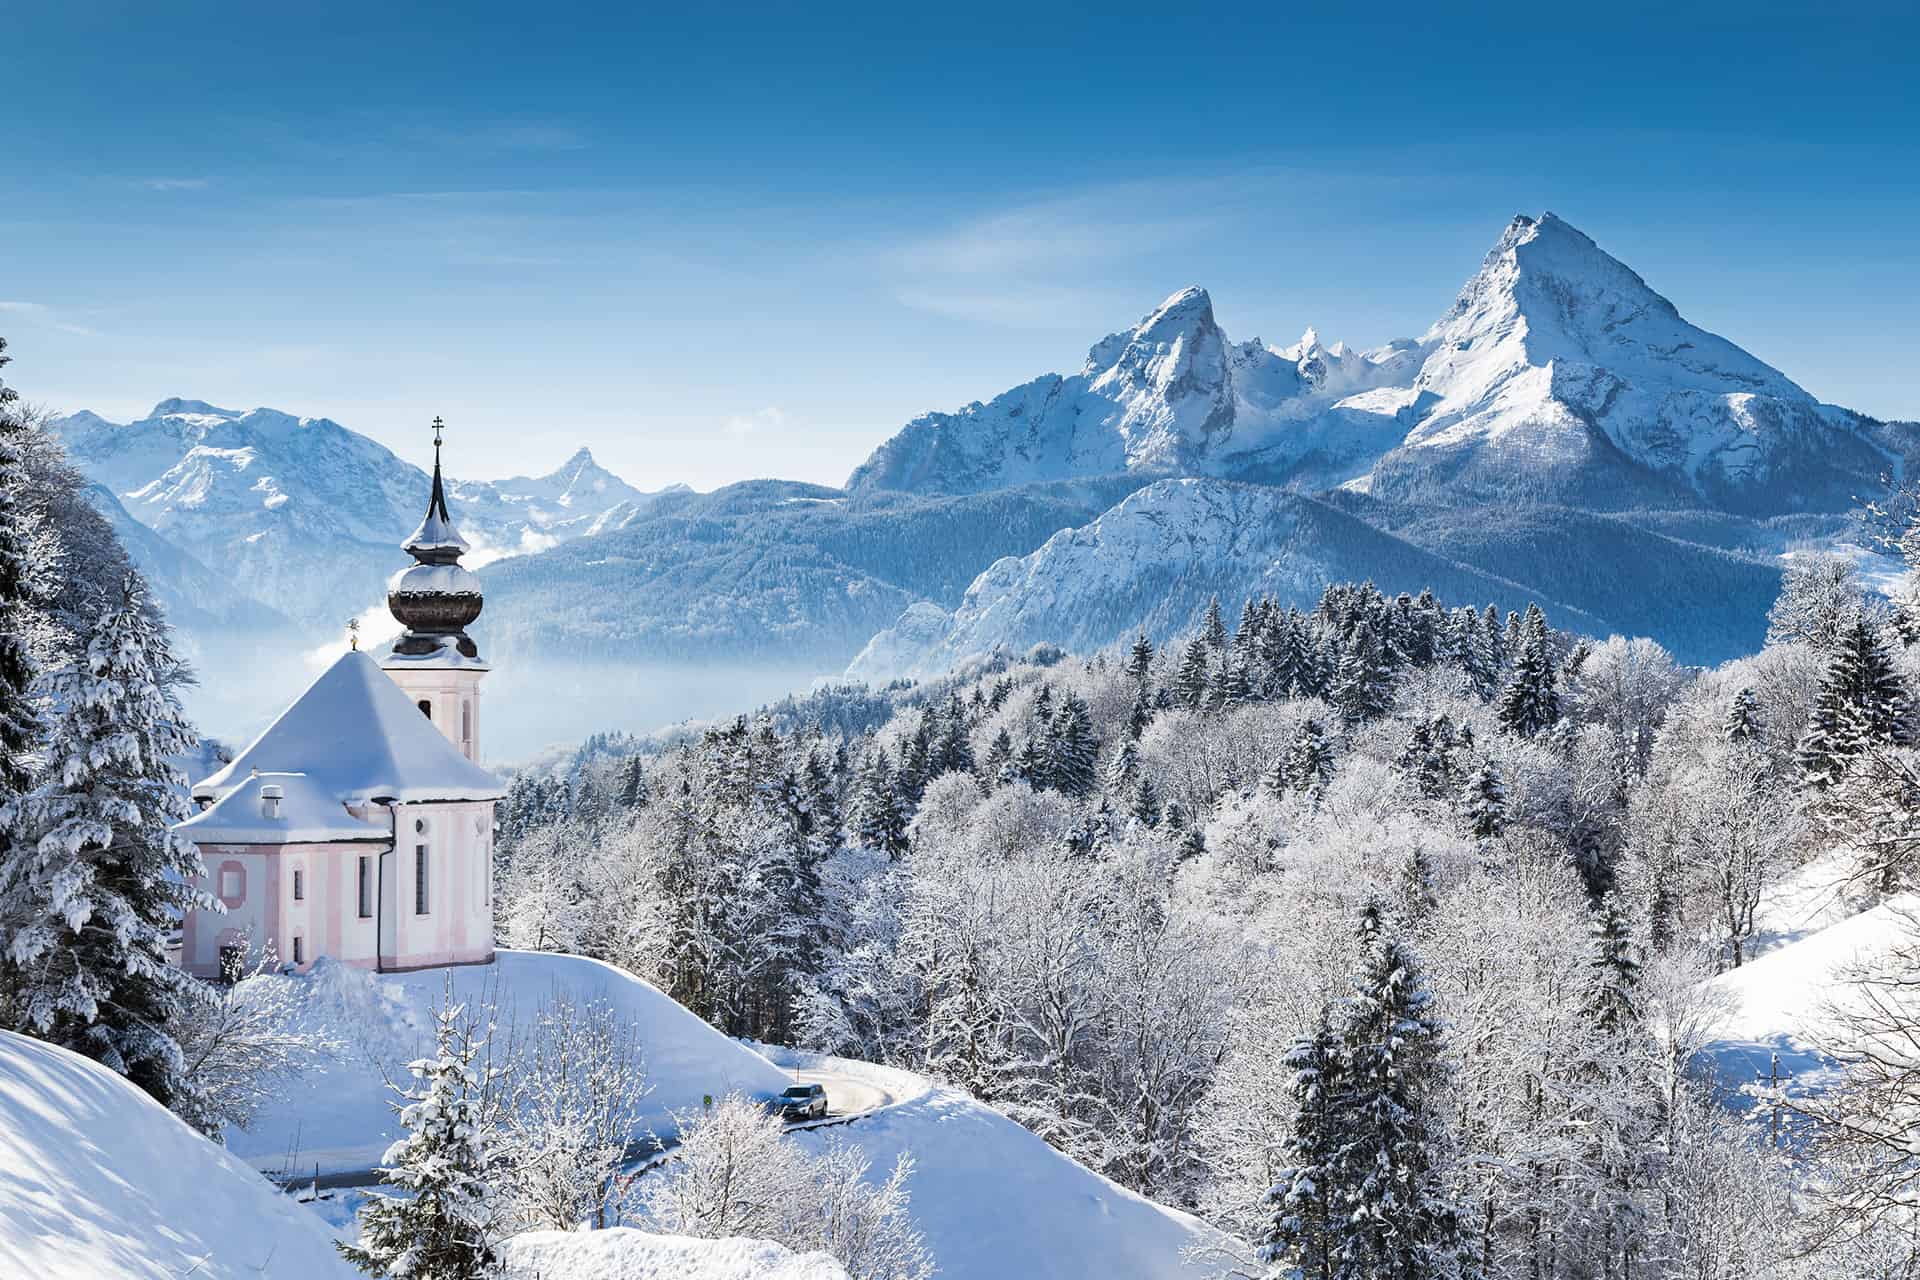 Austria - The Winter Wonderland